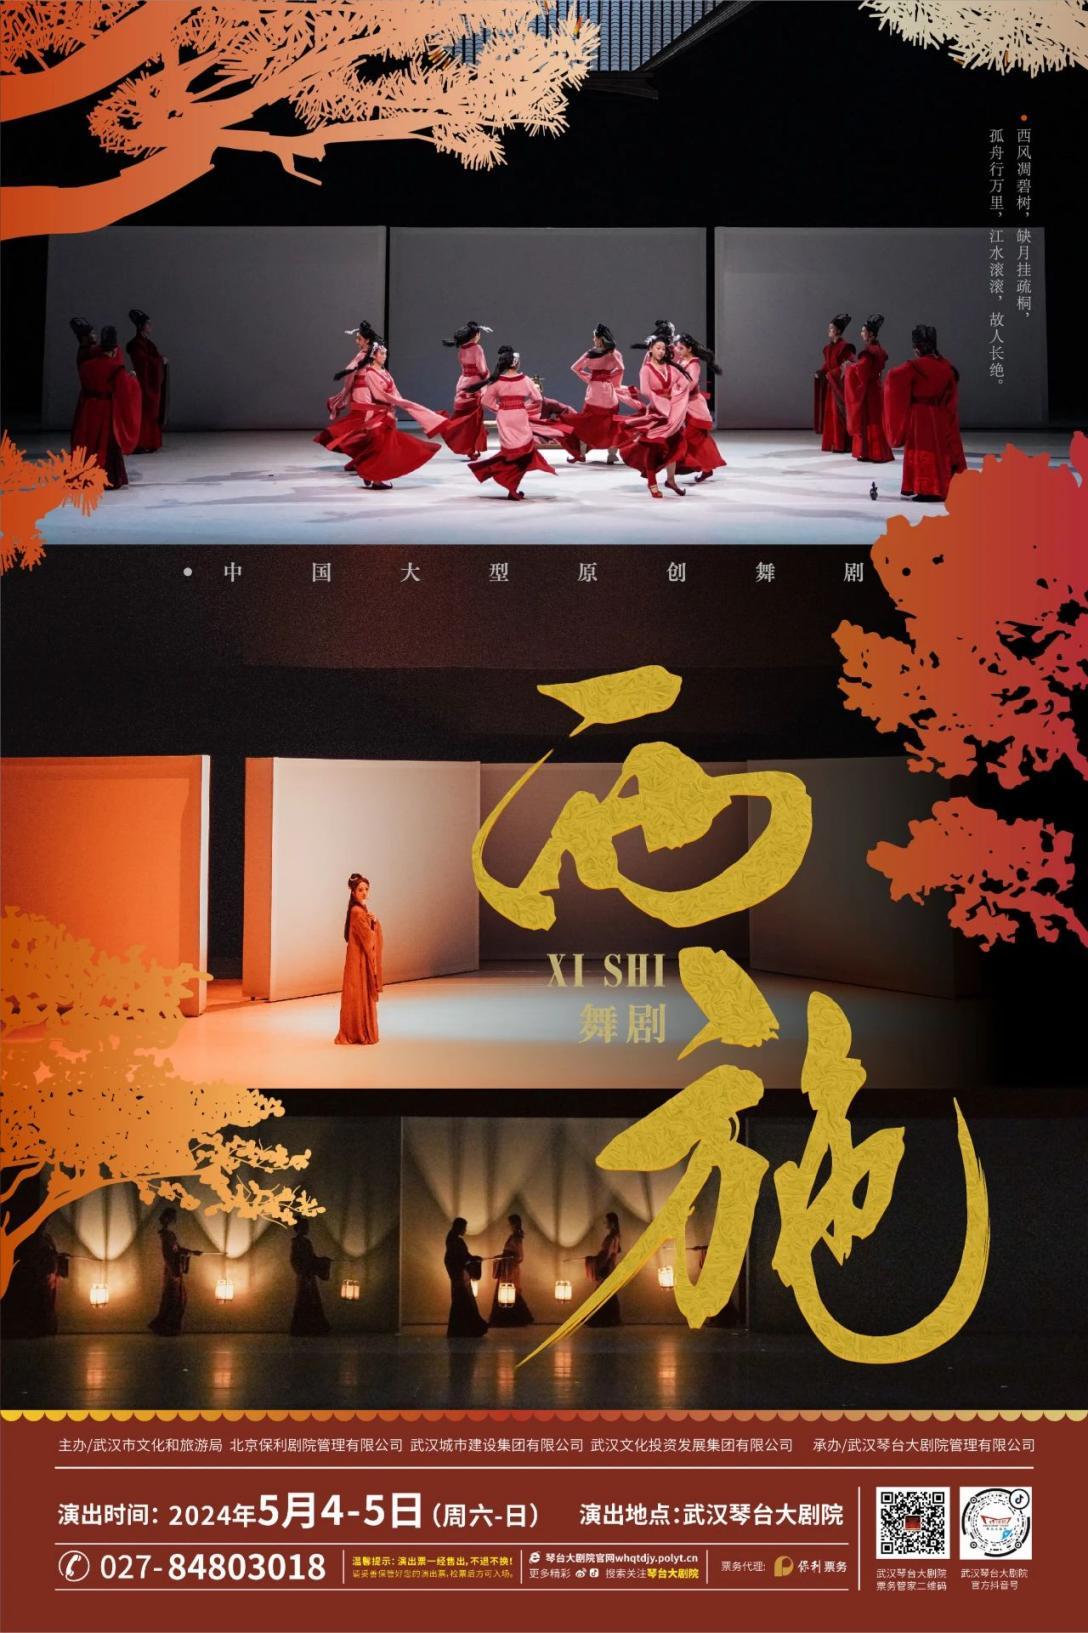 重现千年美人传奇人生 杨丽萍力荐的大型舞剧《西施》“五一”来汉